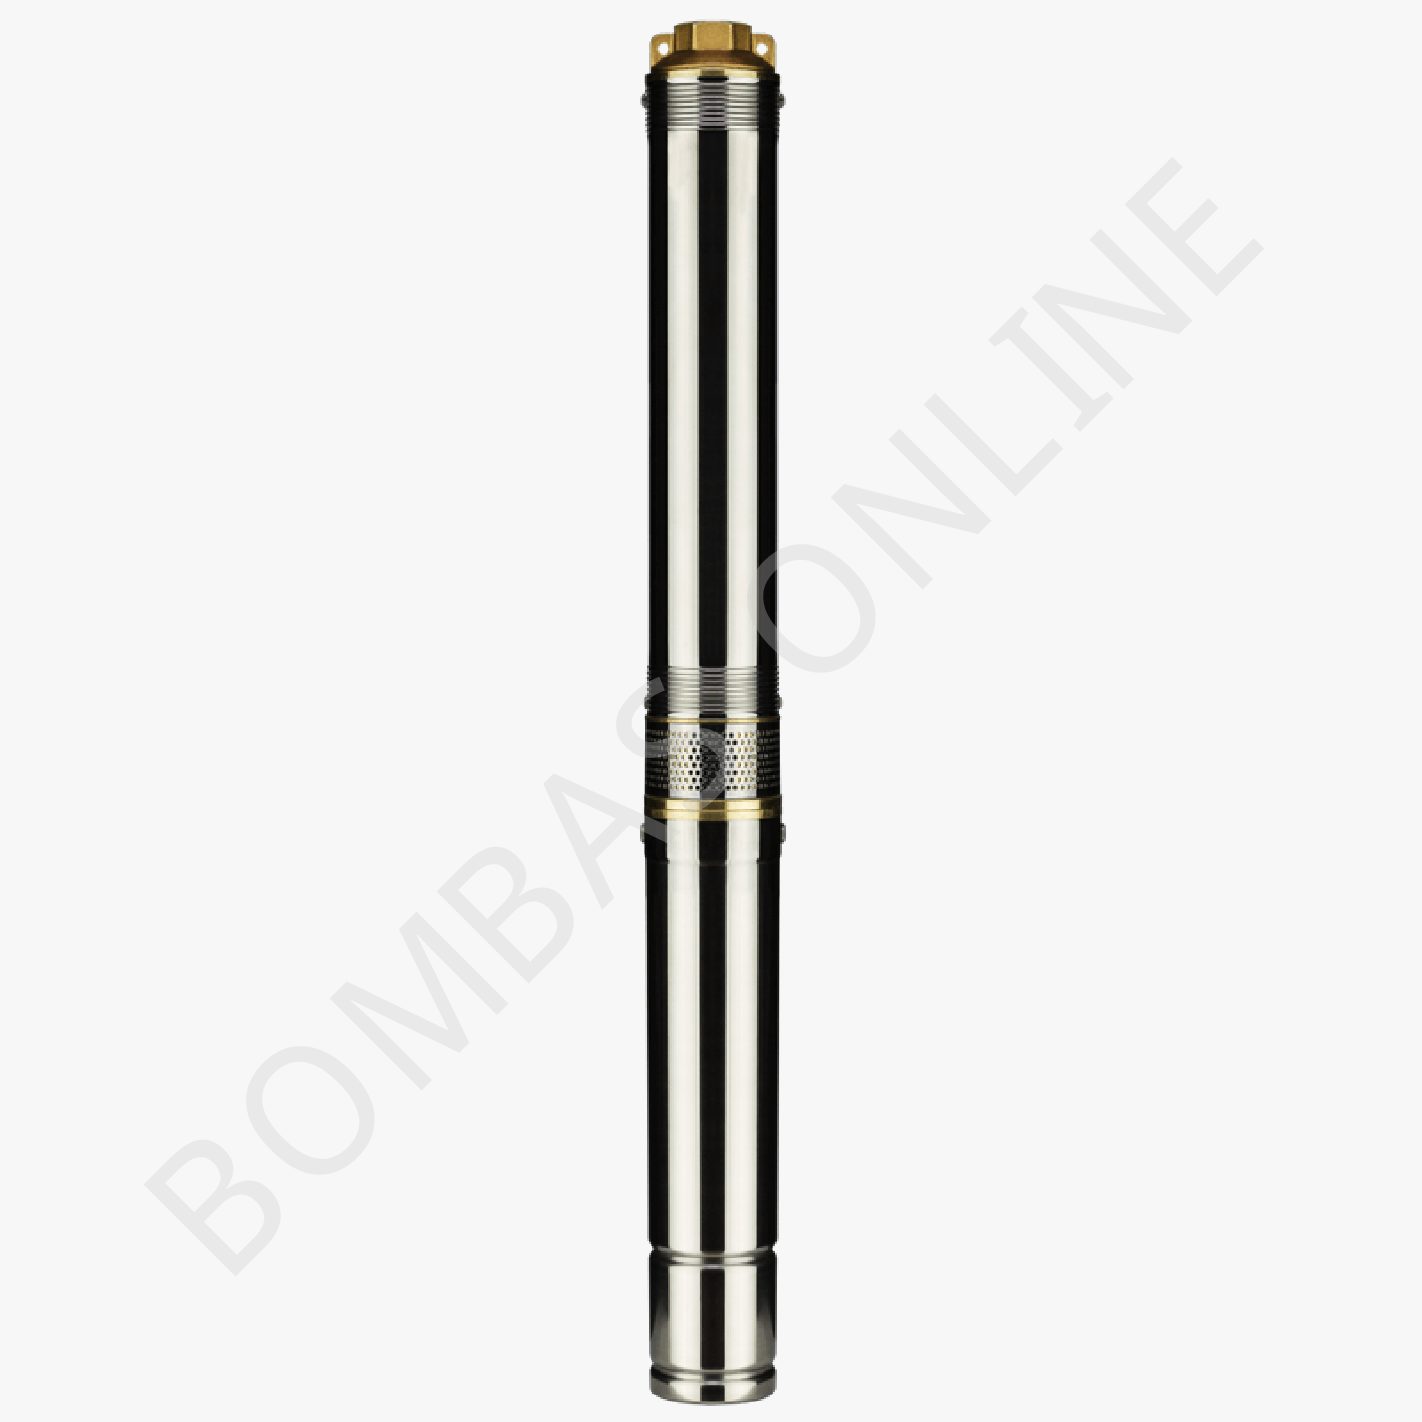 Bomba Sumergible de Pozo Profundo CZERWENY 75QJD140 (3″) – 1.5 HP – Monofásica